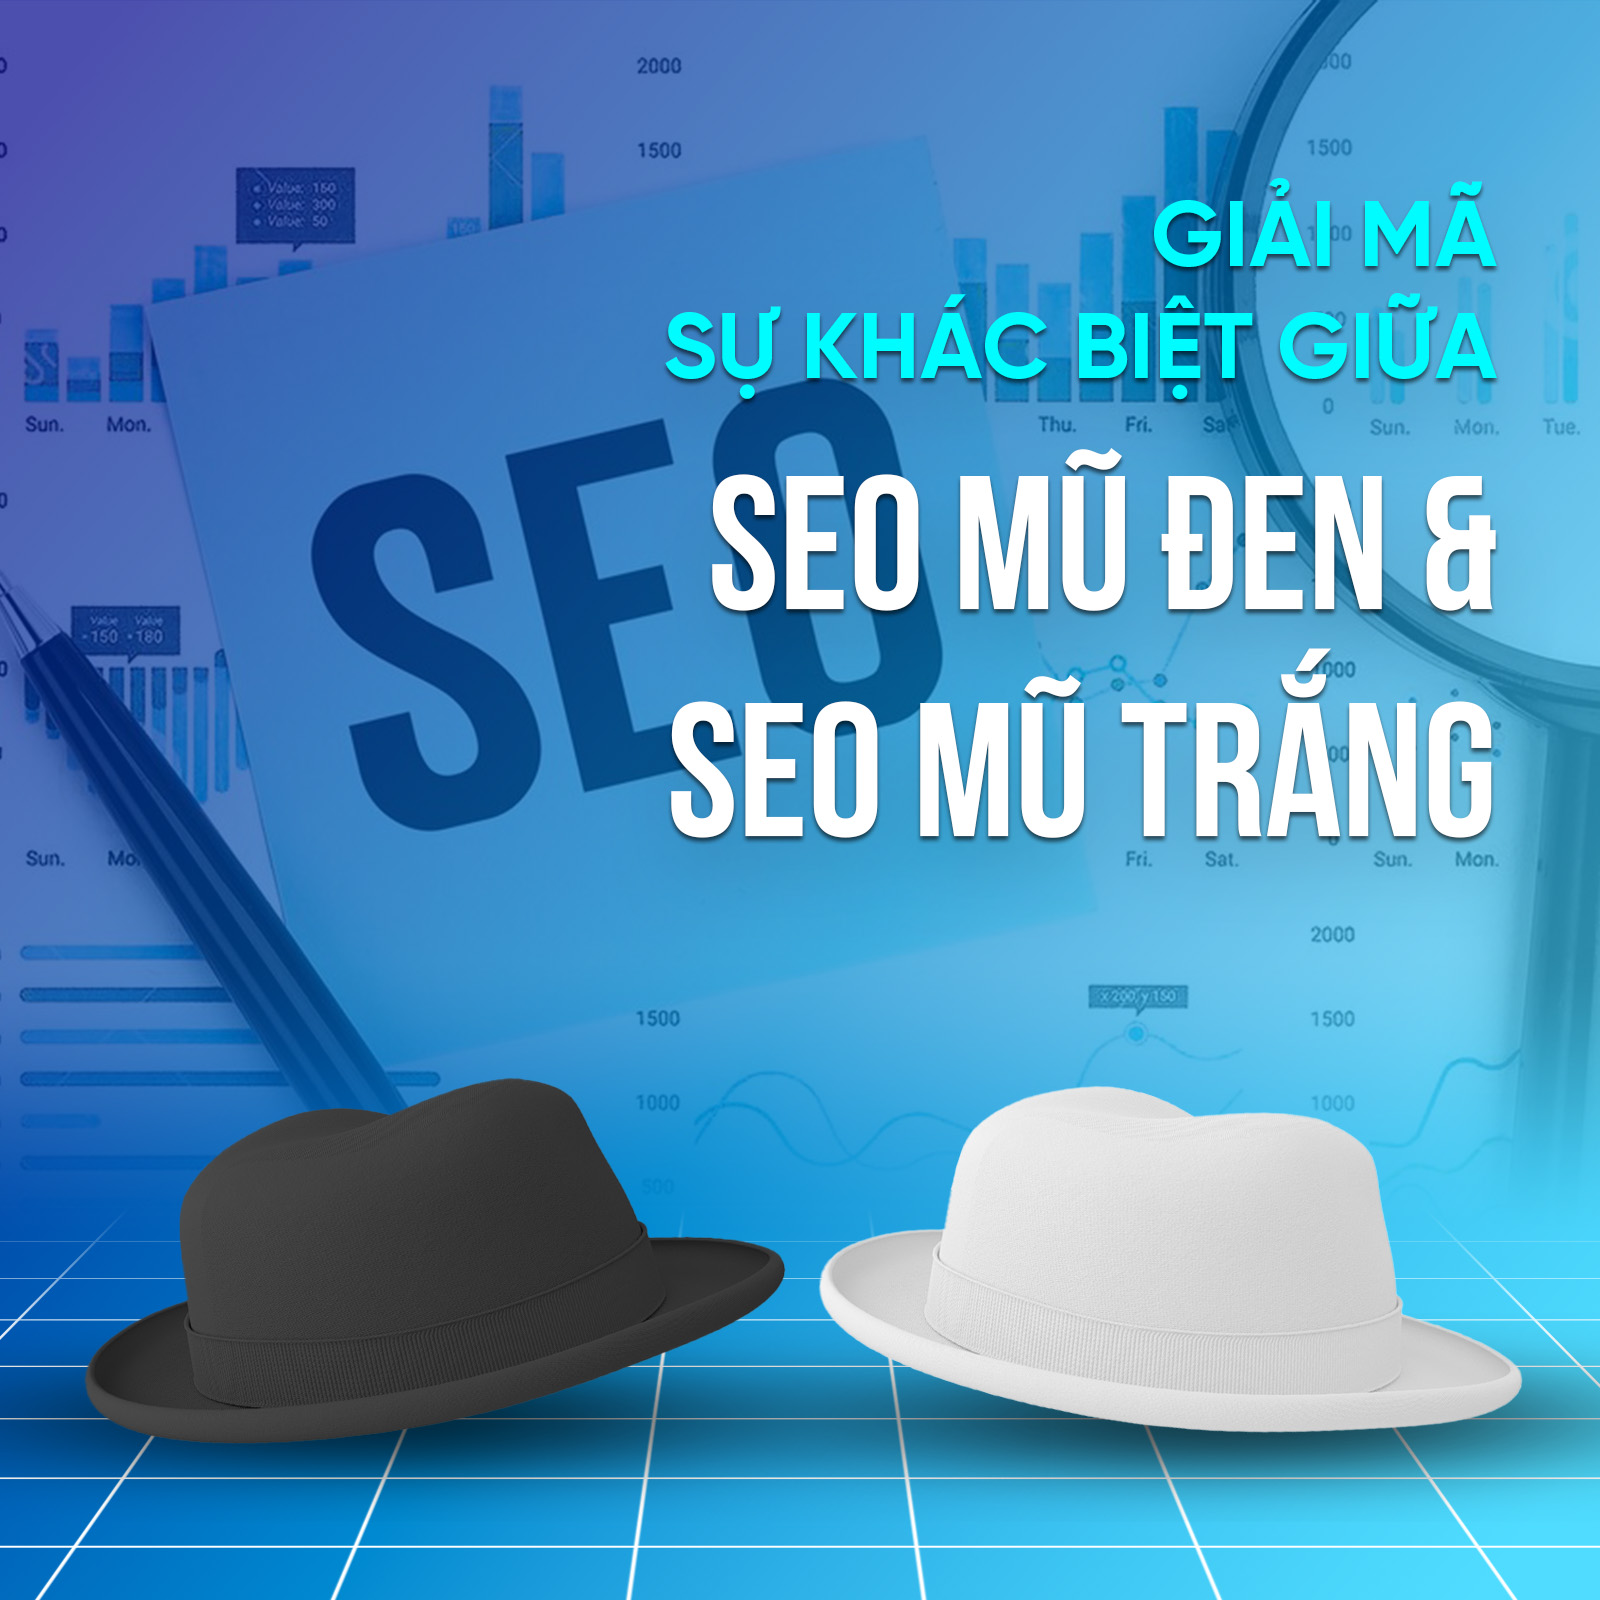 Giải mã sự khác biệt giữa SEO mũ đen và SEO mũ trắng